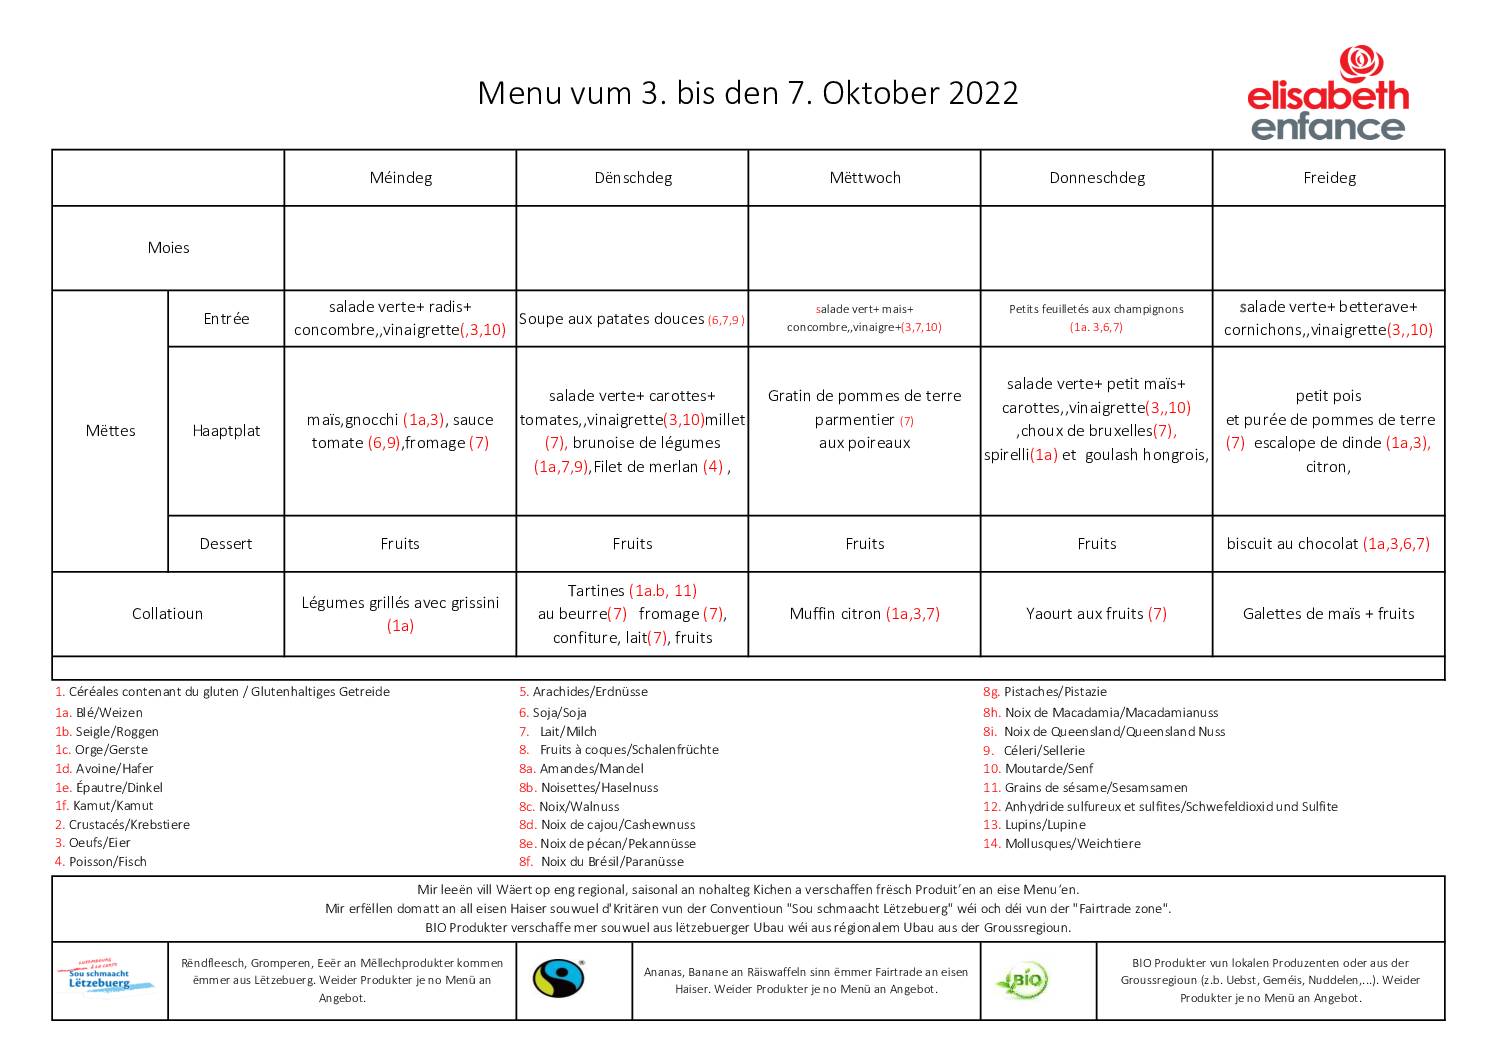 menus de la semaine du 3 au 7 octobre 2022